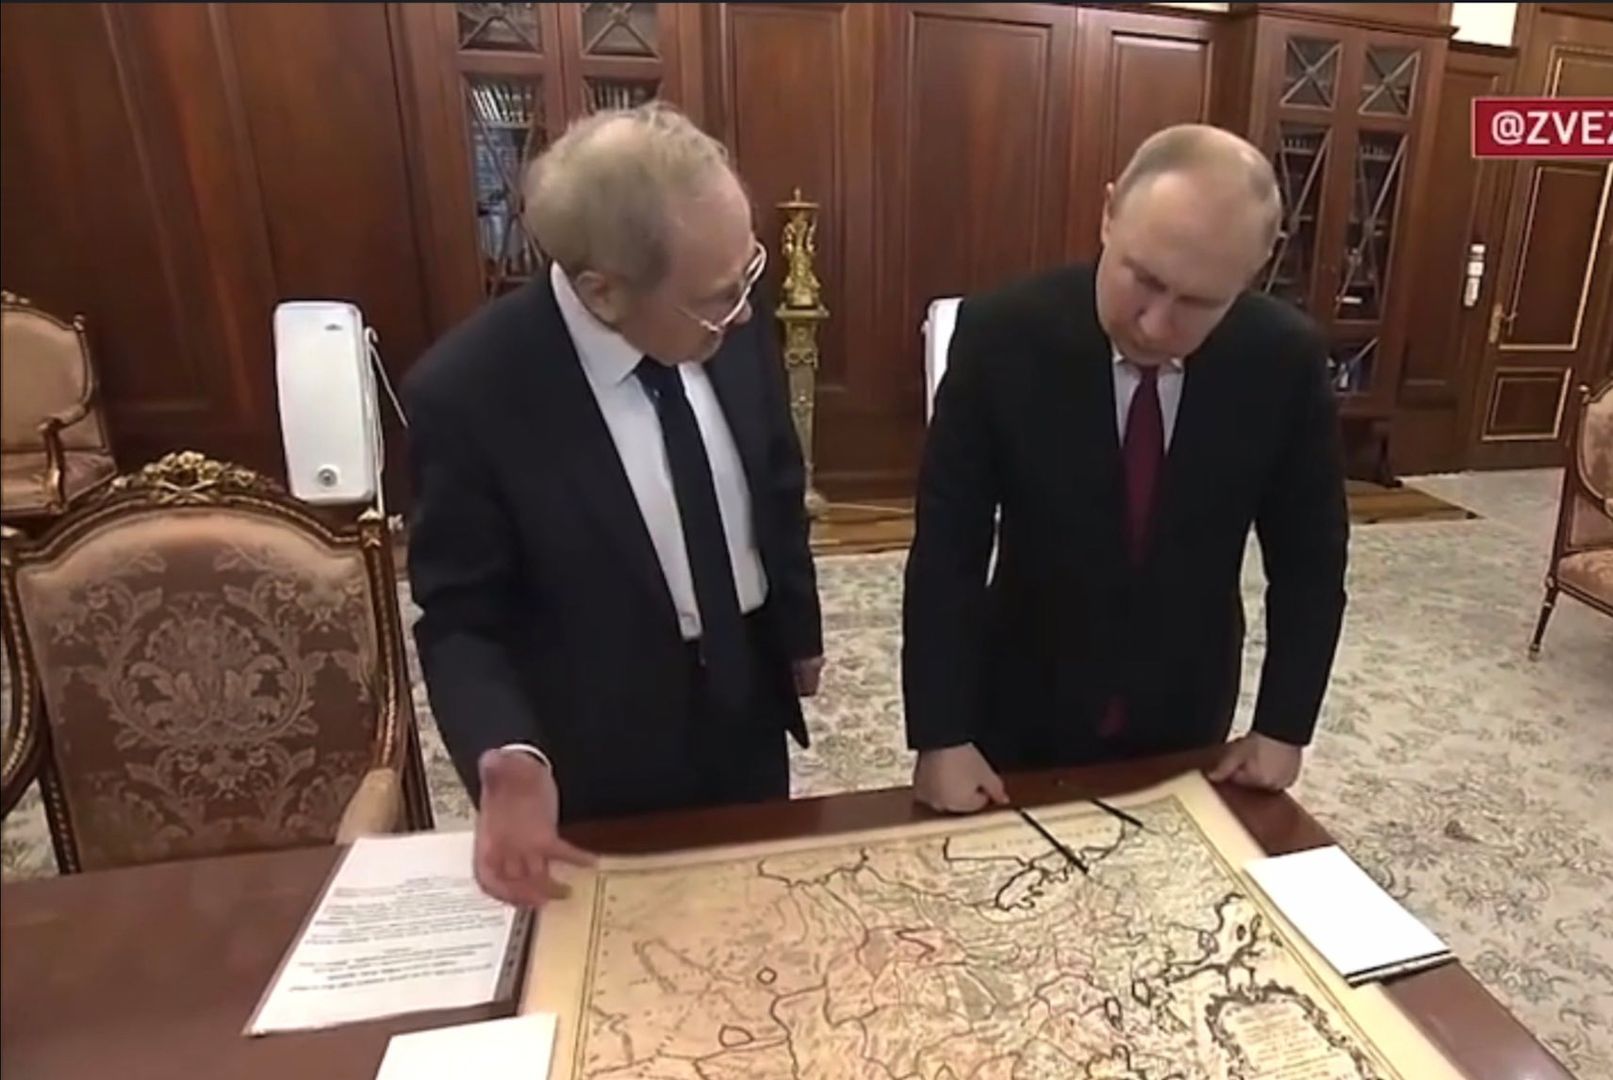 Pokazali Putinowi mapę. Nikt nie wychwycił ironii